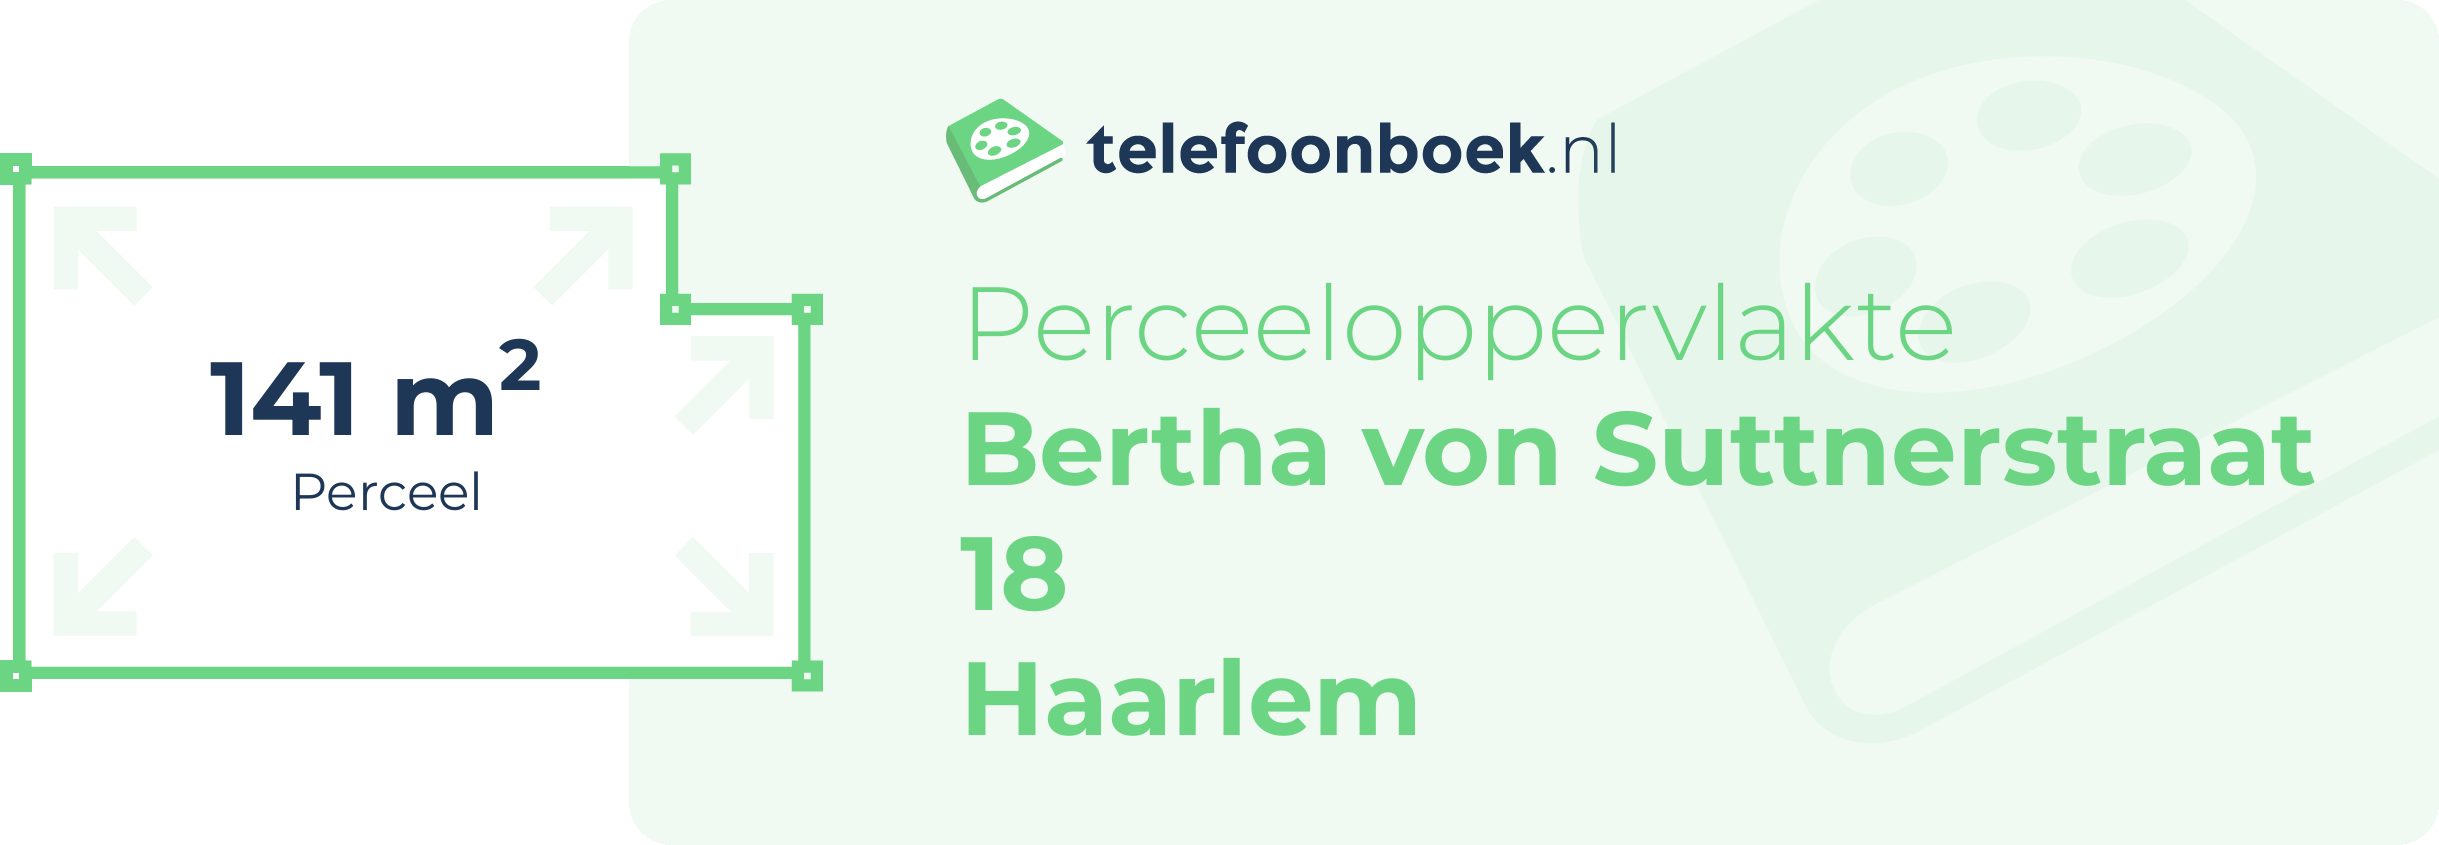 Perceeloppervlakte Bertha Von Suttnerstraat 18 Haarlem